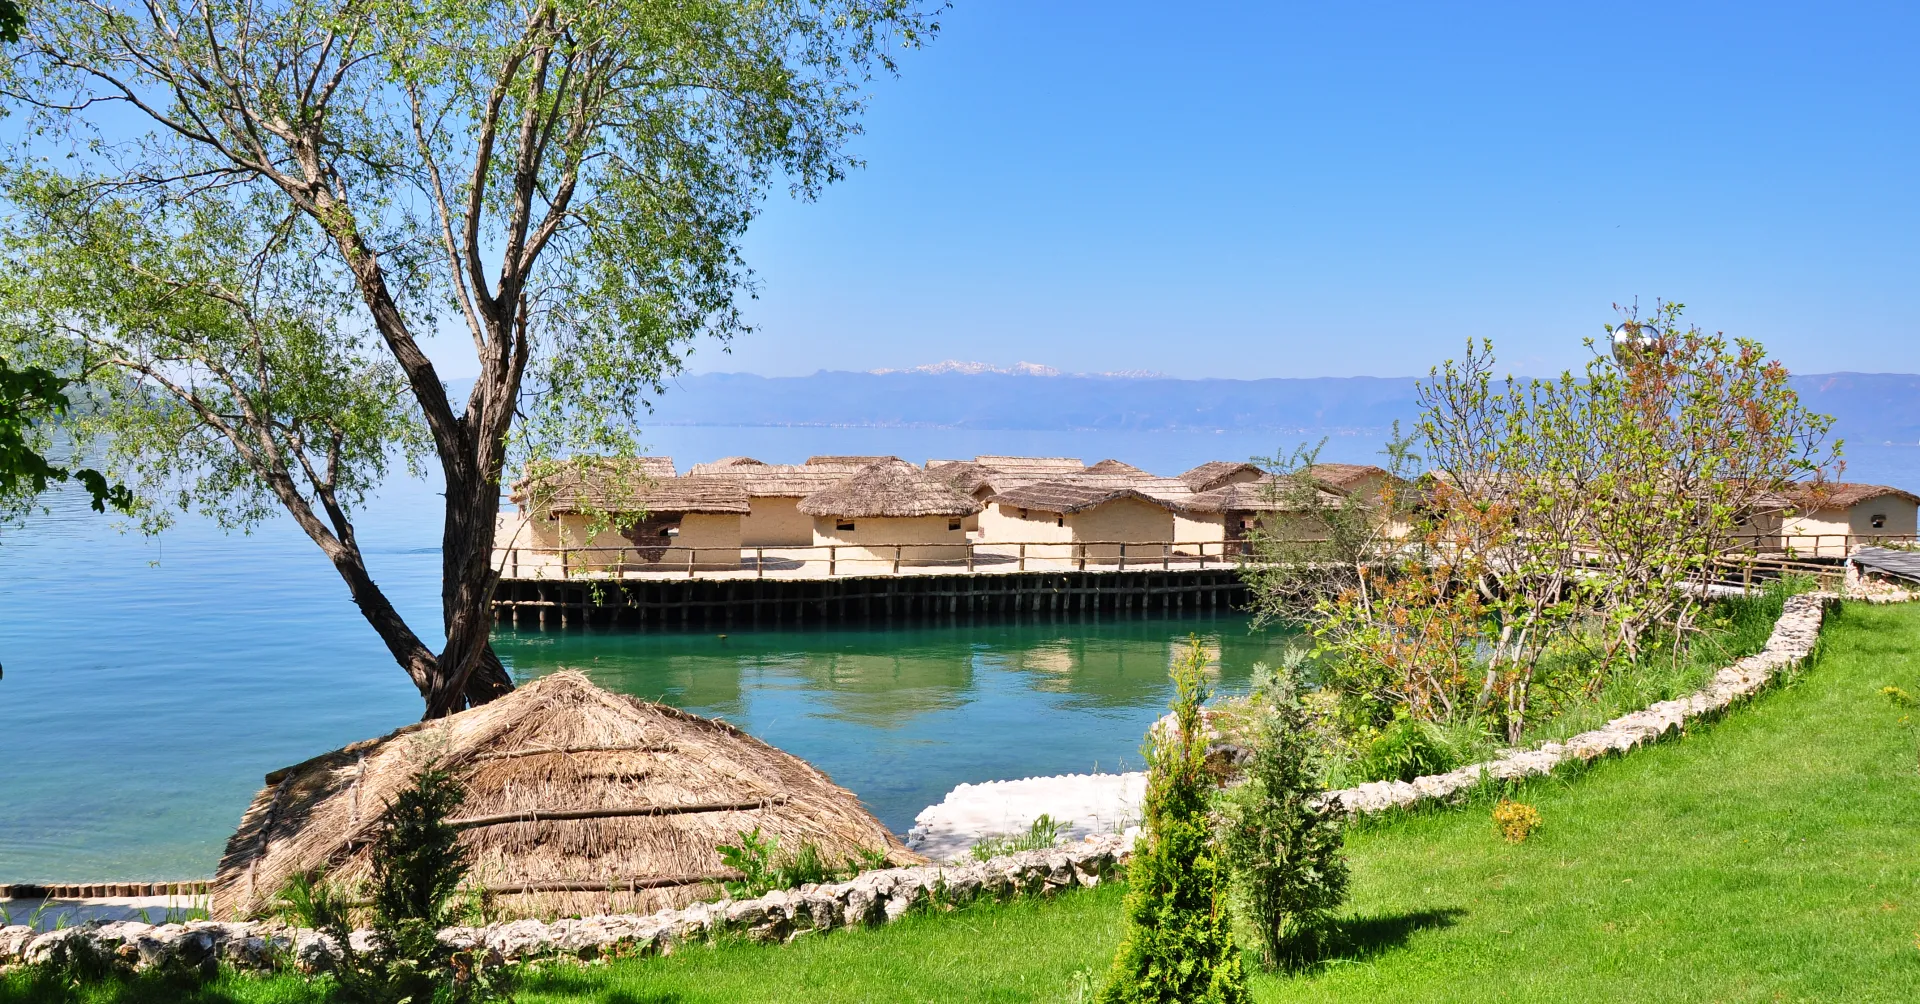 Prazgodovinsko koliščarsko naselje Ohrid (The Bay of Bones)